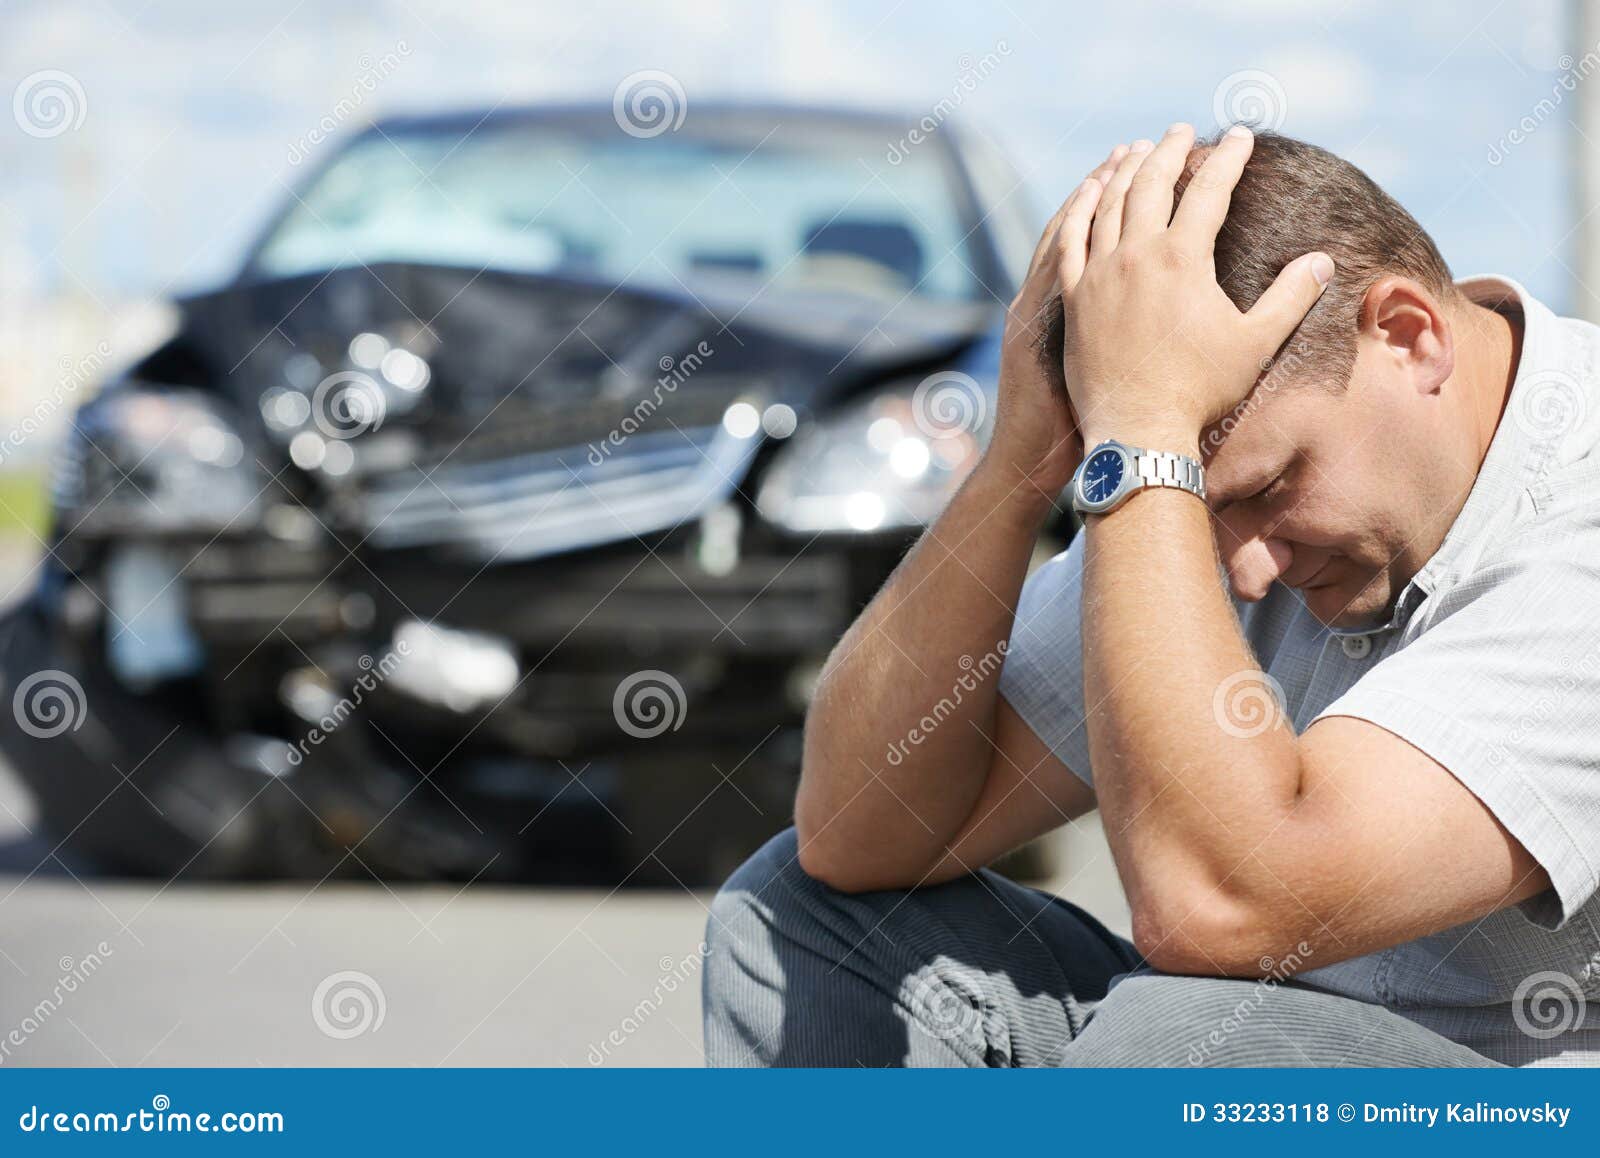 upset man after car crash